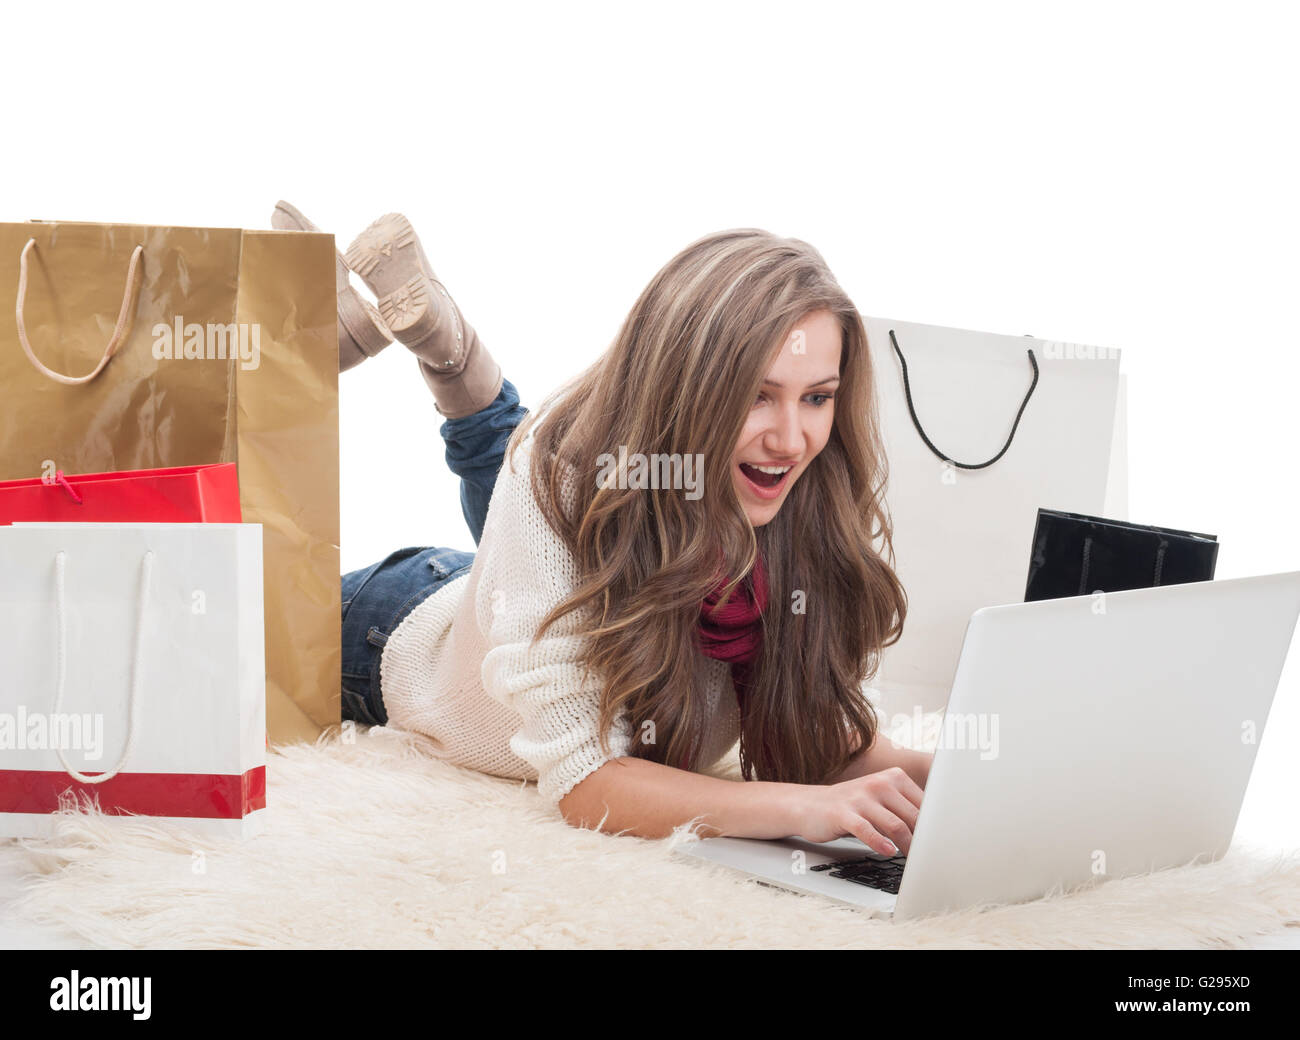 Online-Shopaholic-Konzept mit einer Frau zu kaufen und Geld für Internet-Shops Stockfoto